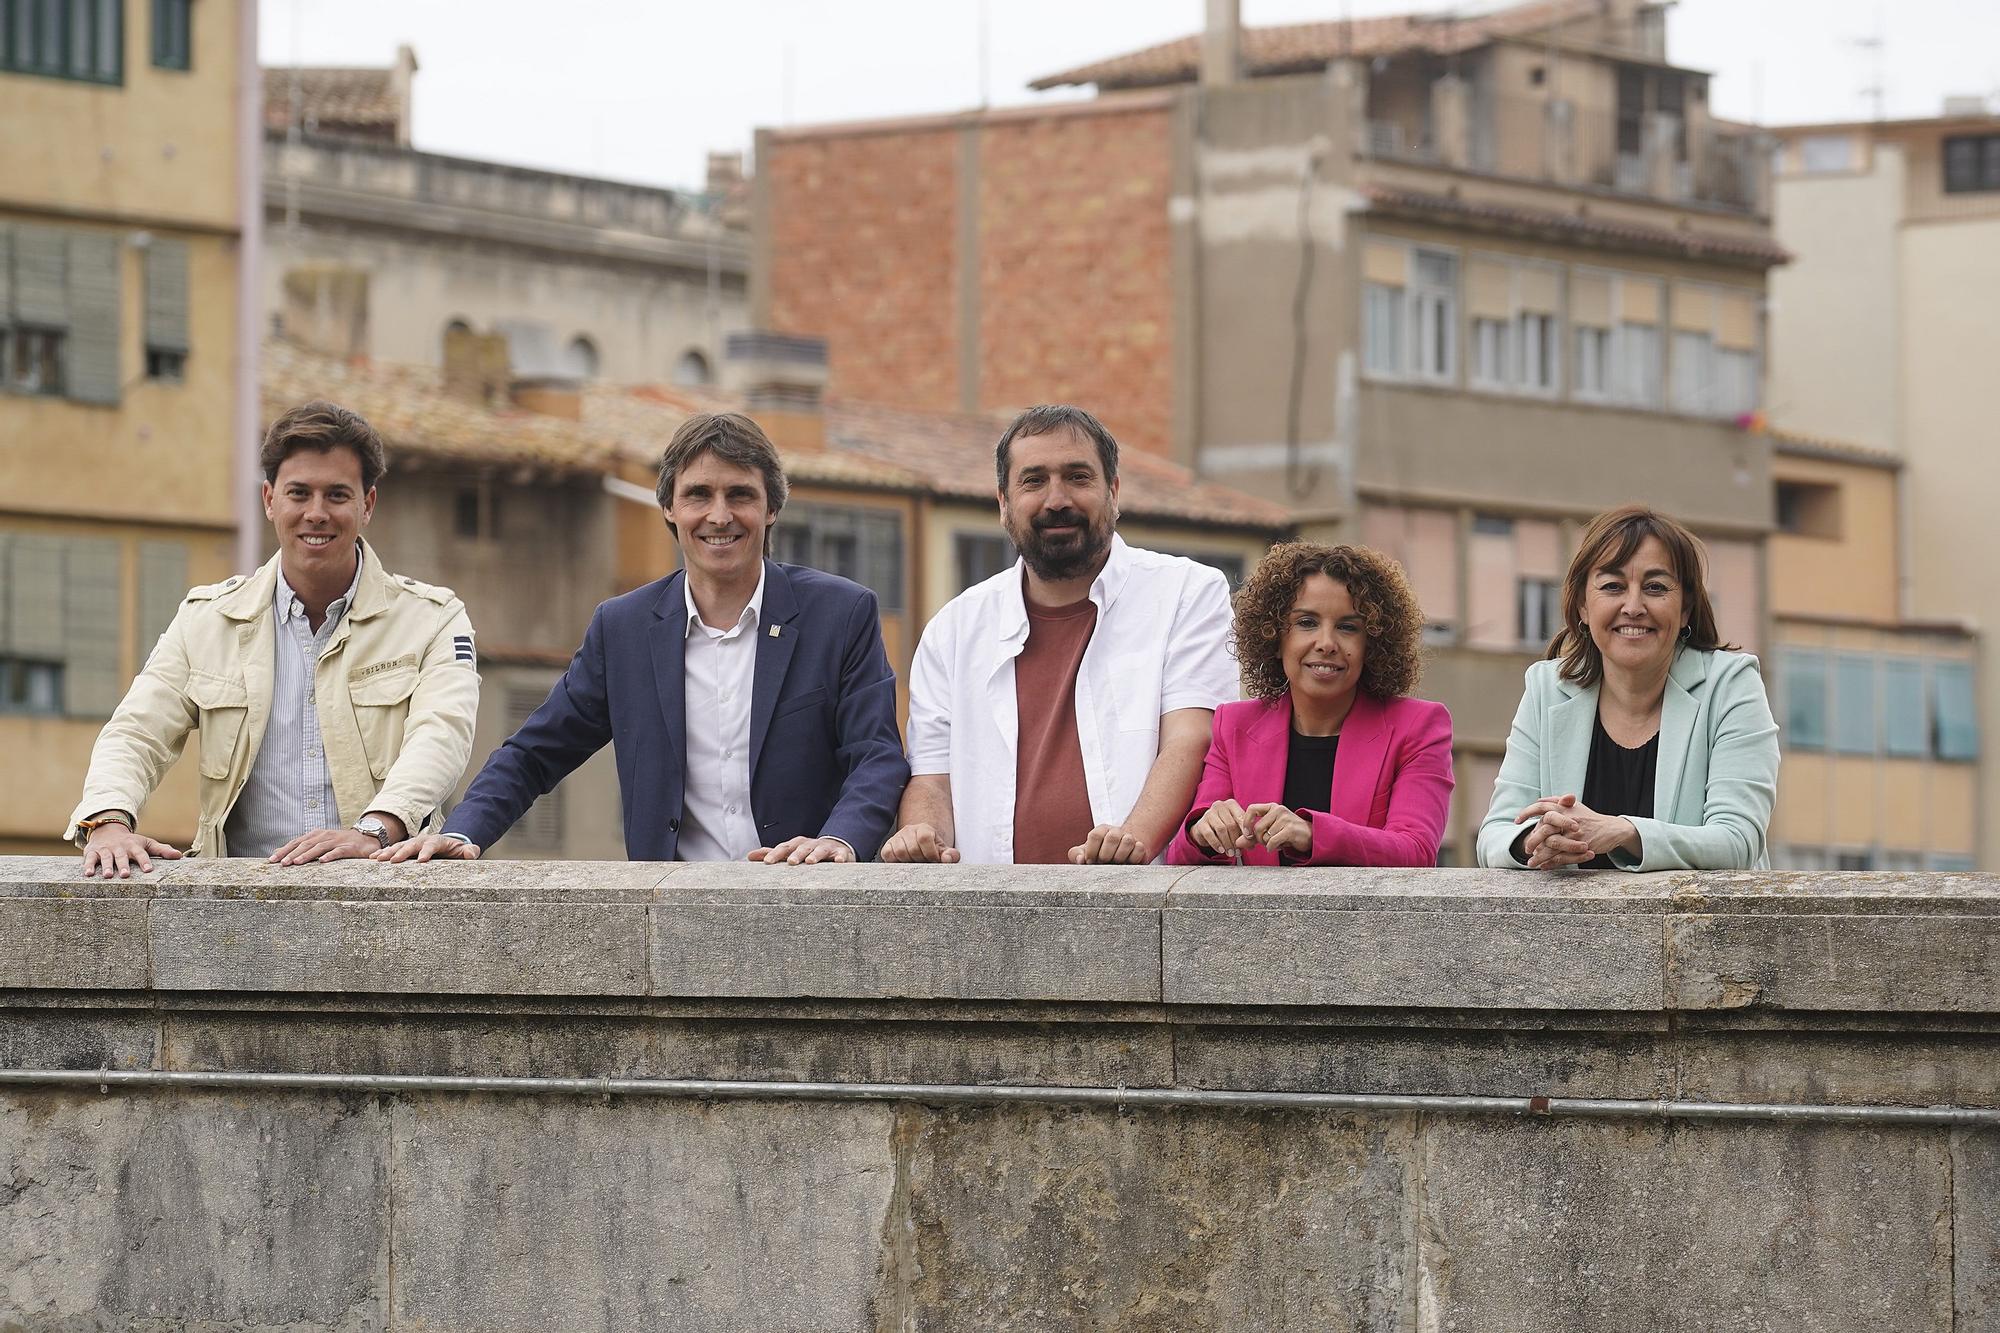 Els caps de llista per Girona a les eleccions al parlament